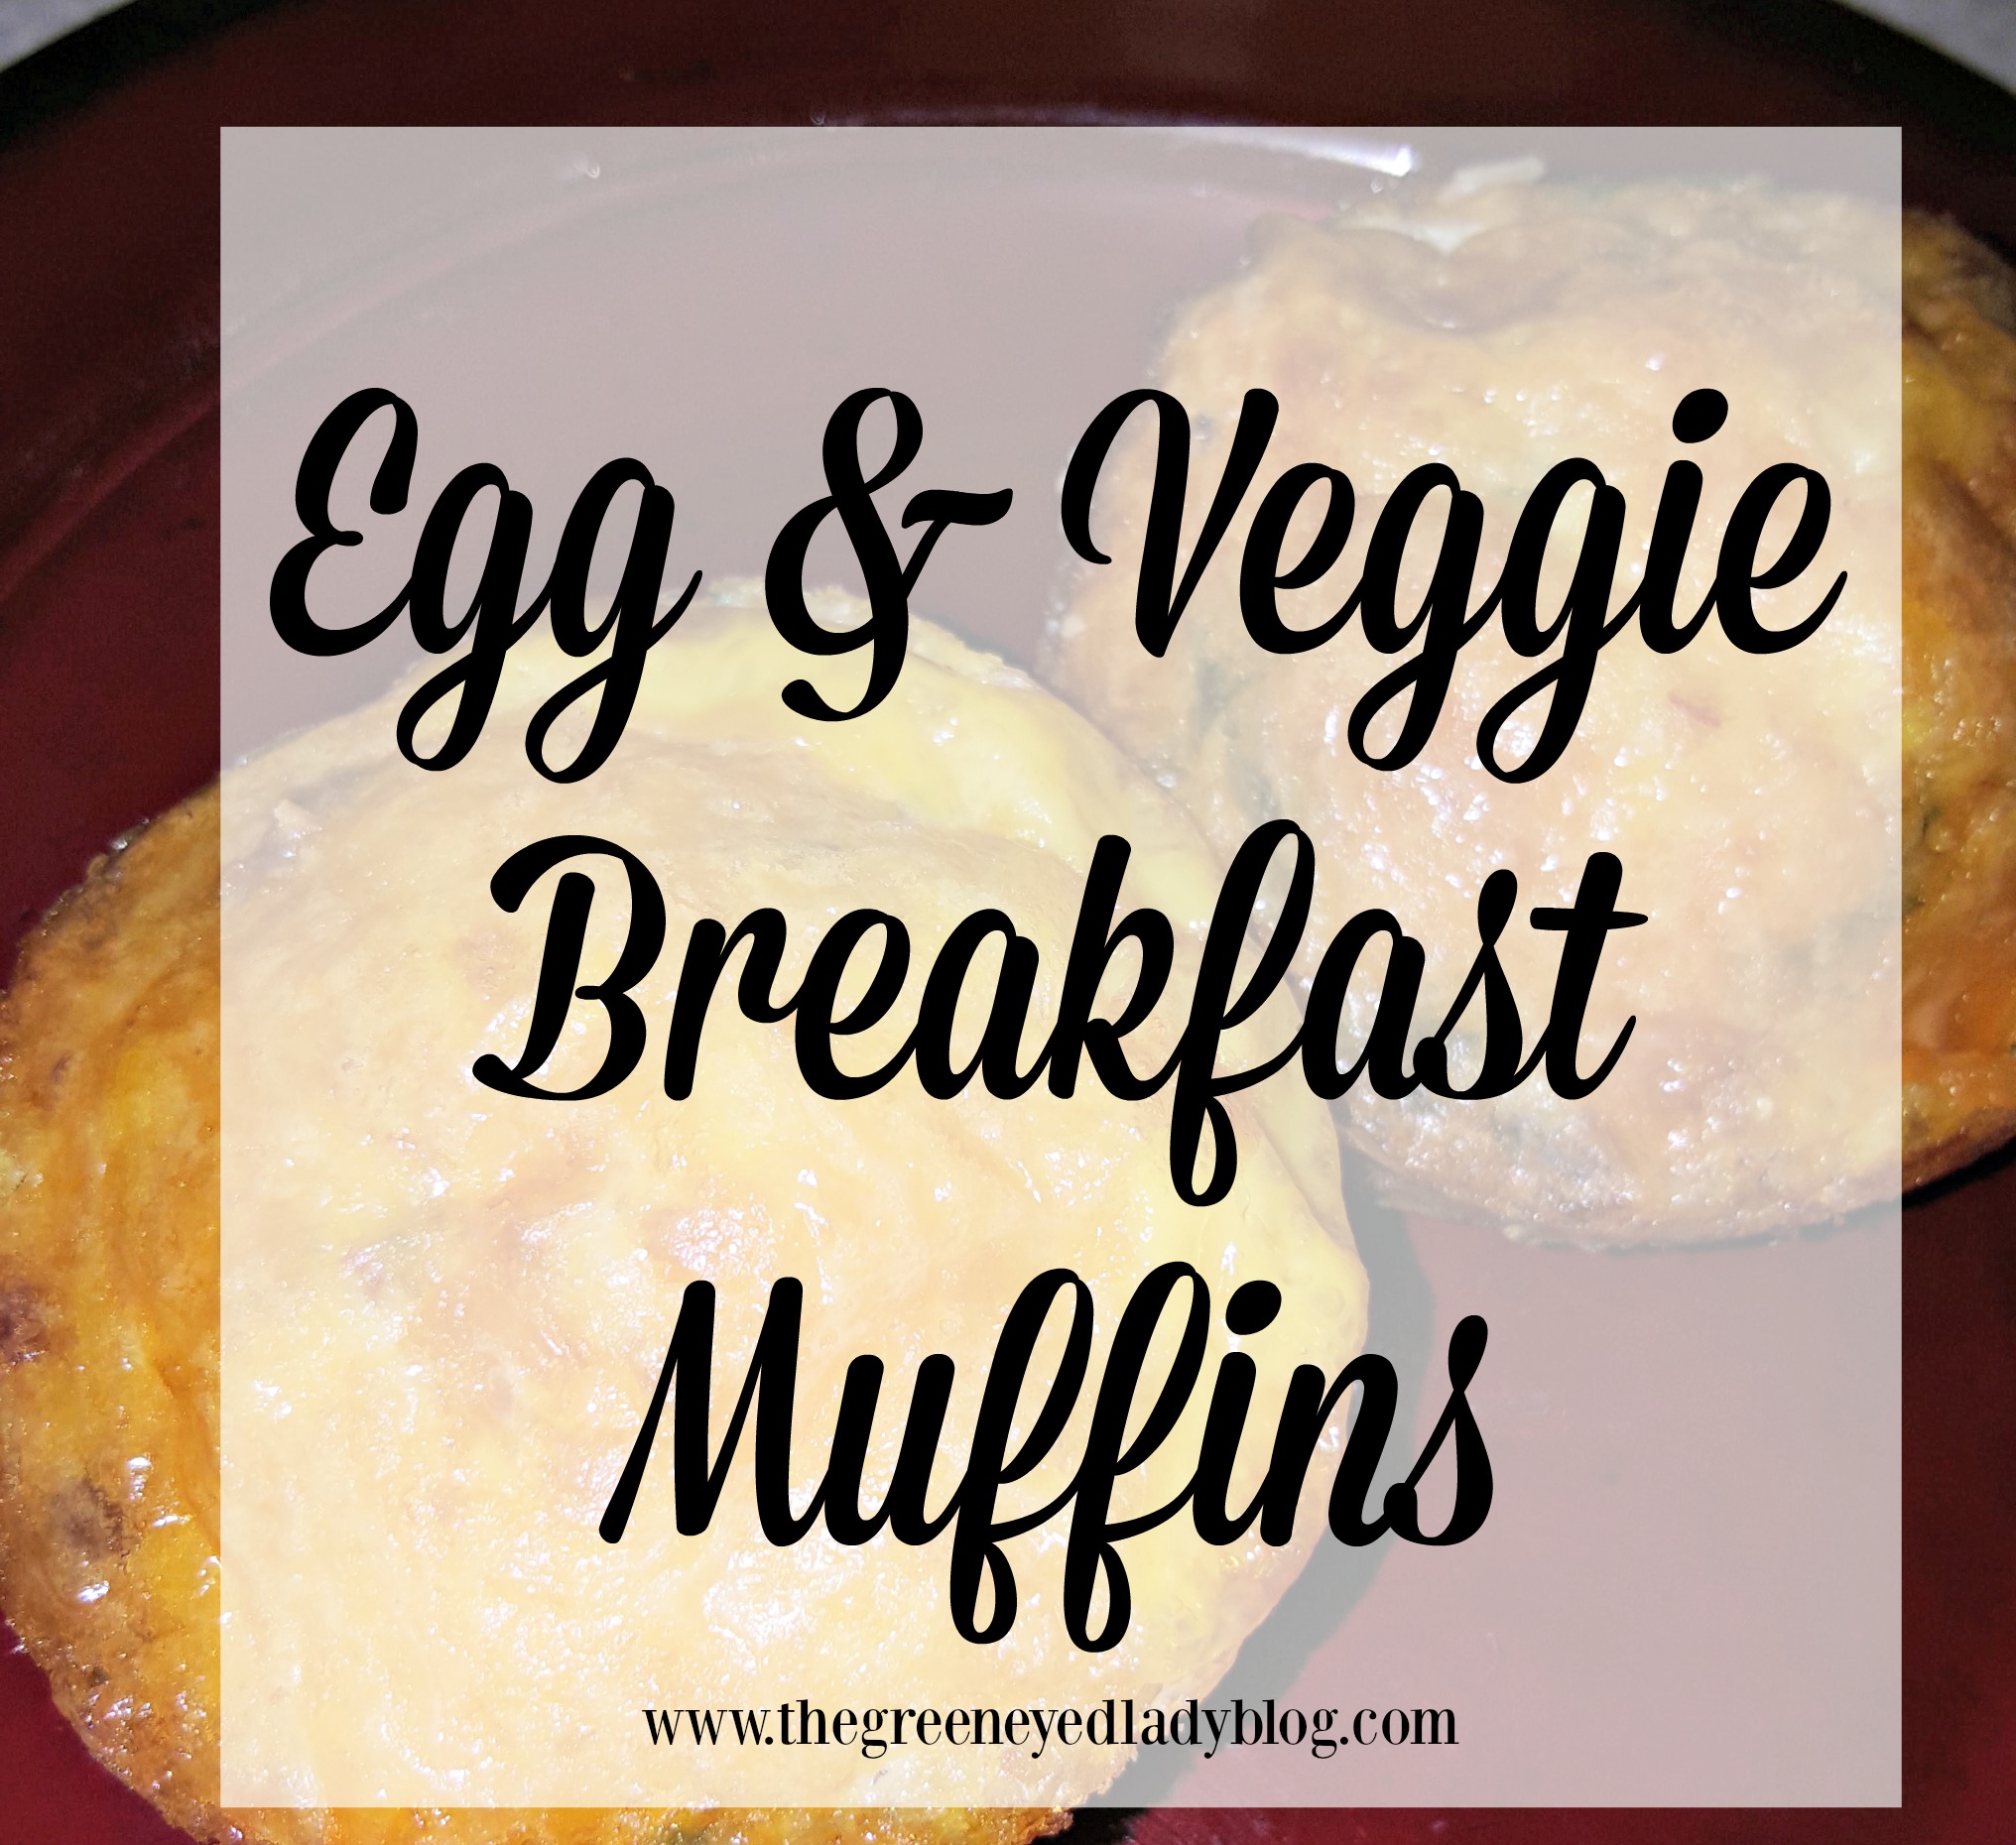 eggveggiebreakastmuffins-title